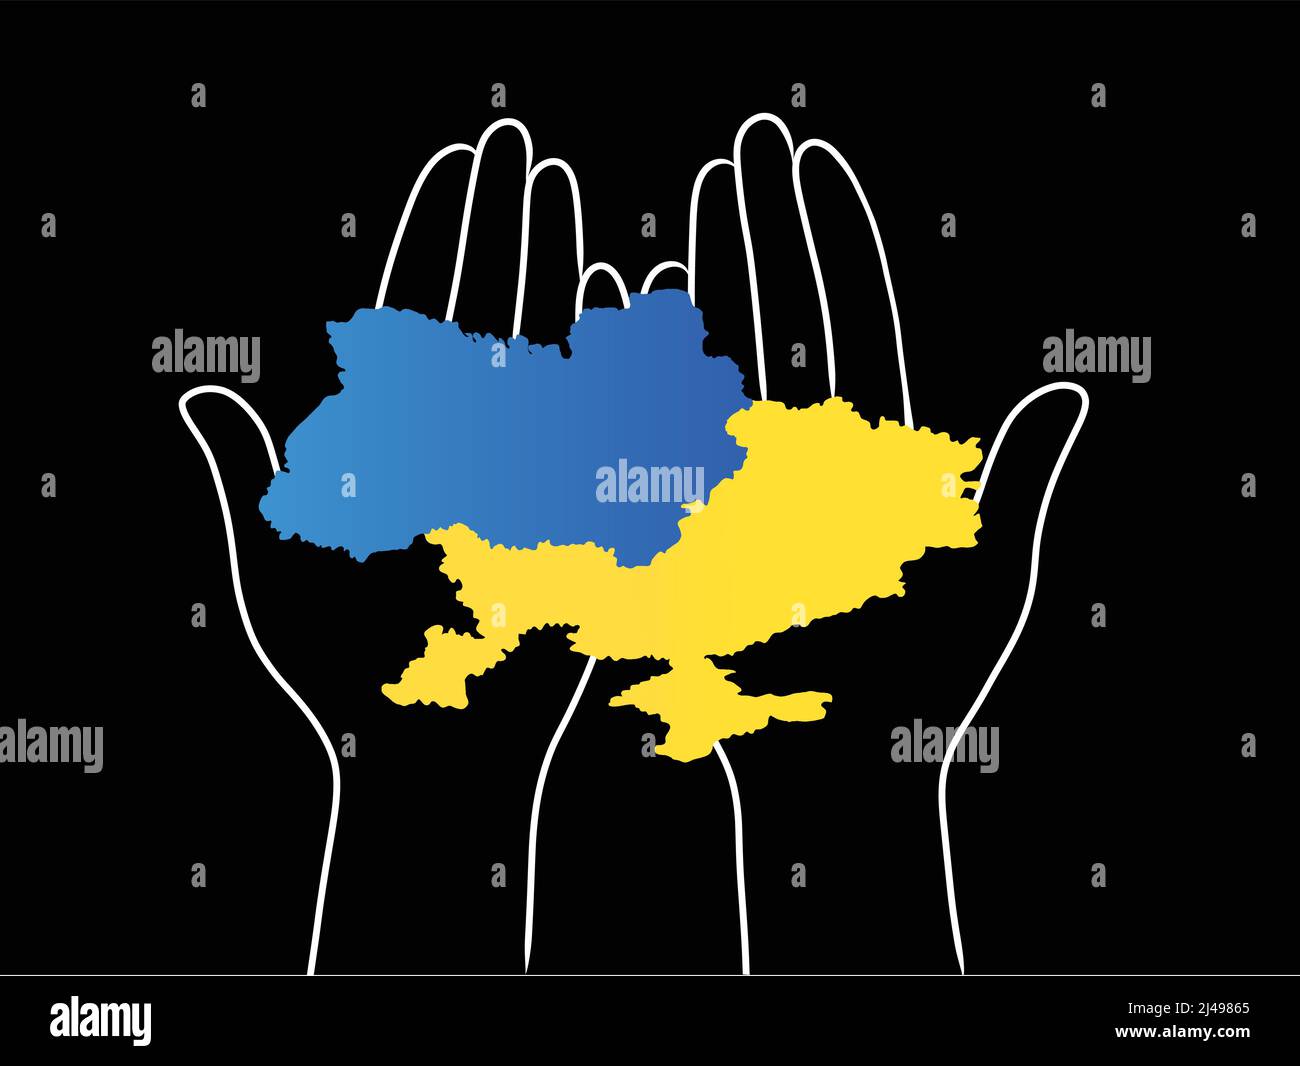 Abbildung des ukrainischen Territoriums in Händen auf schwarz, Stockbild Stock Vektor